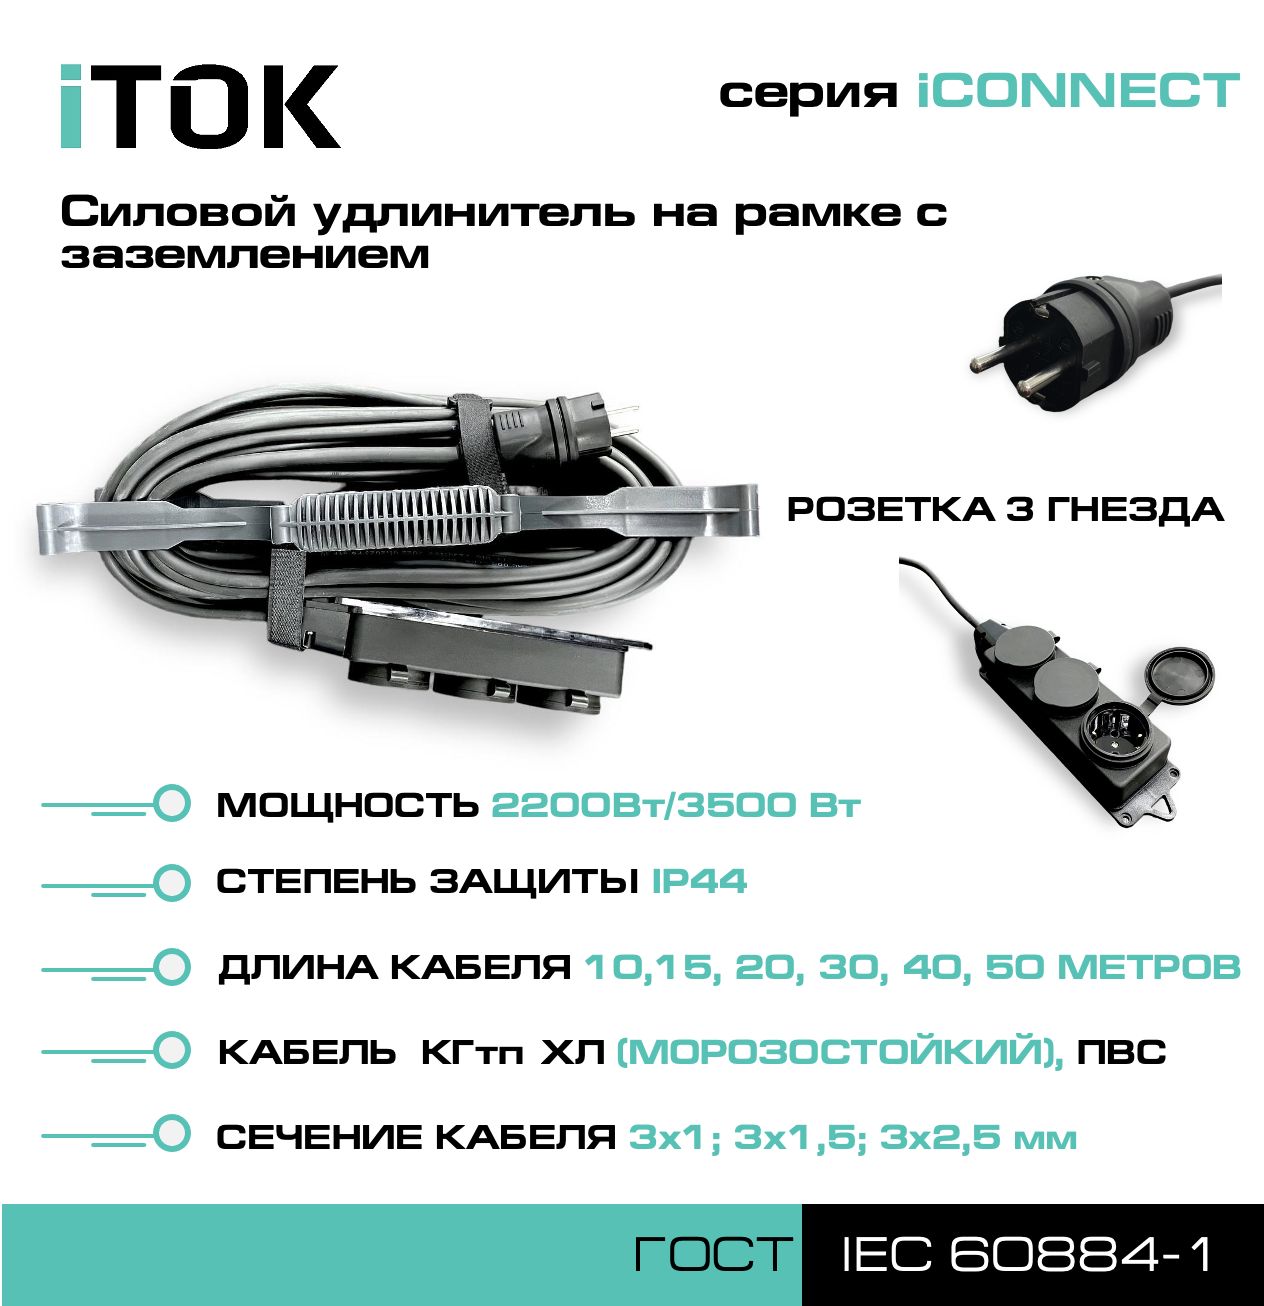 Удлинитель на рамке с заземлением серии iTOK iCONNECT КГтп-ХЛ 3х1,5 мм 3 гнезда IP44 15 м